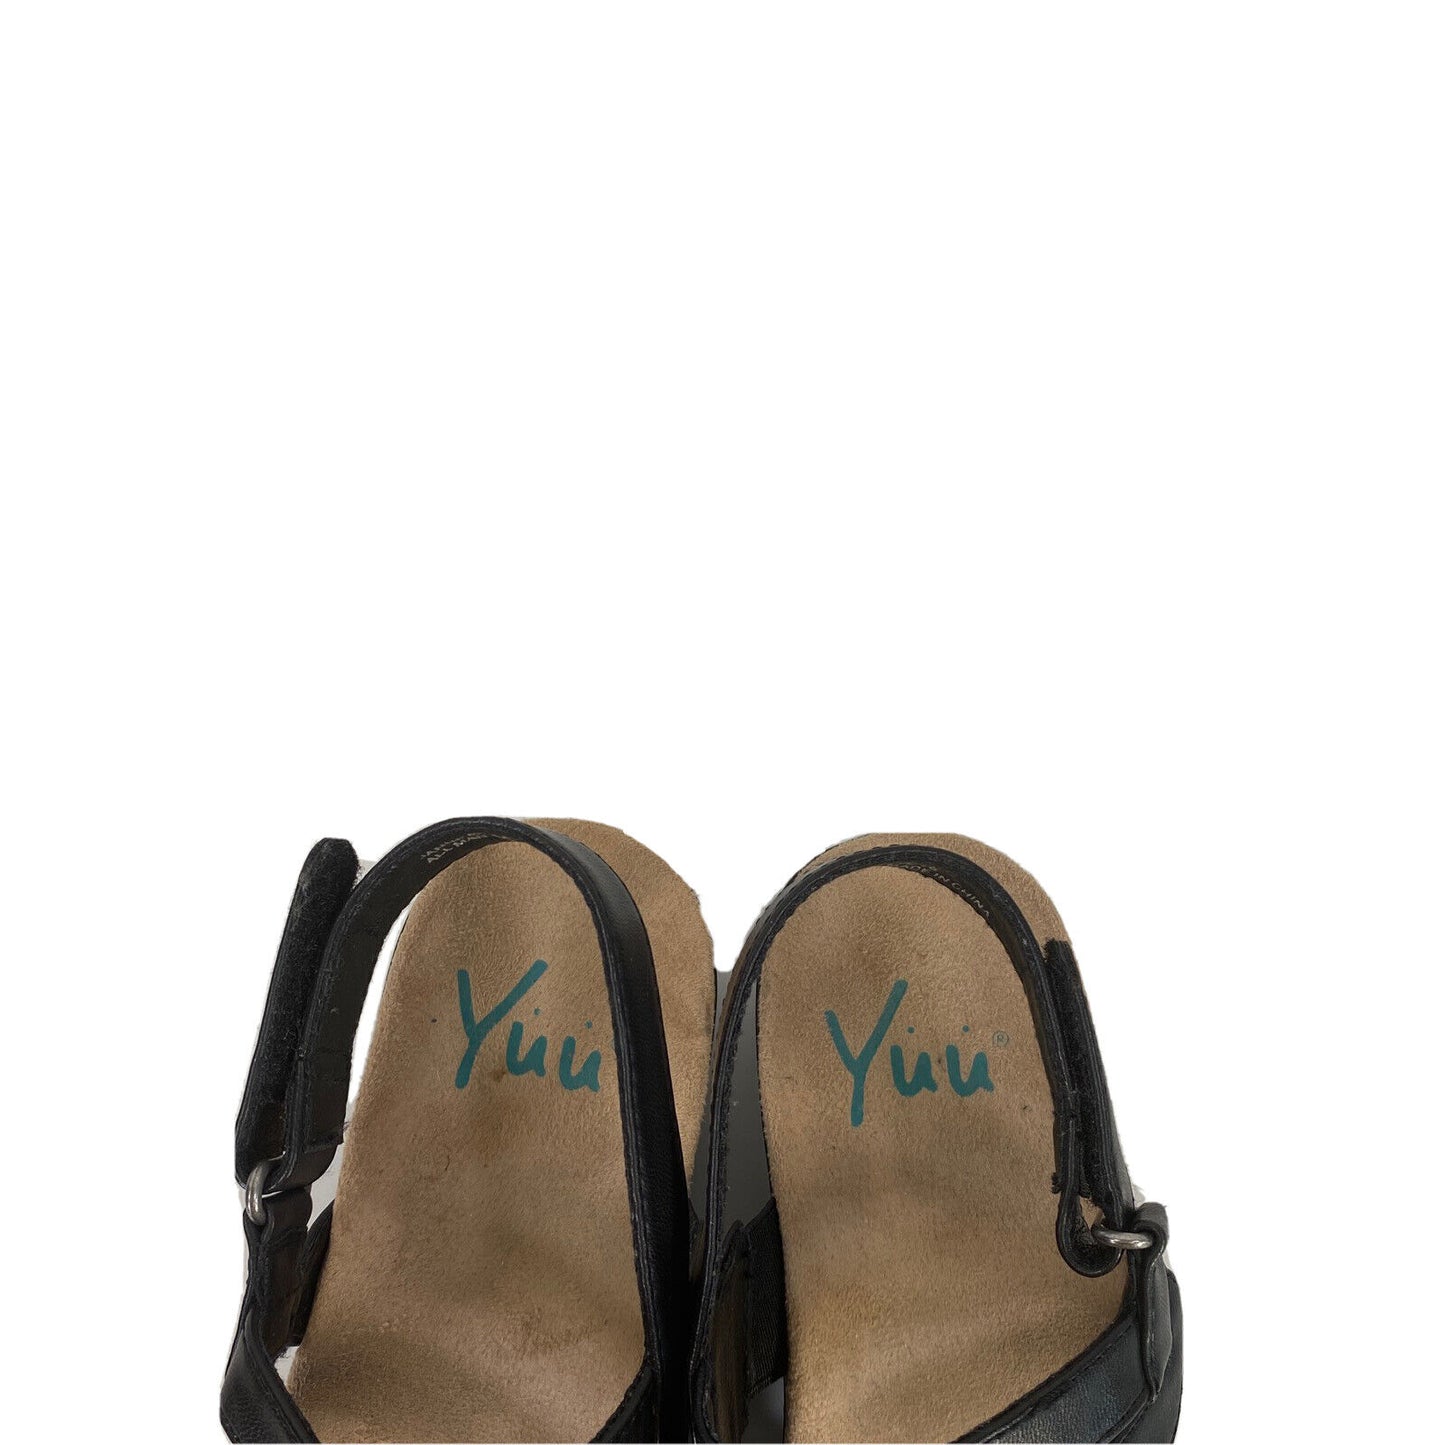 Yuu Women's Black Faux Leather Janne Slingback Sandals - 5.5